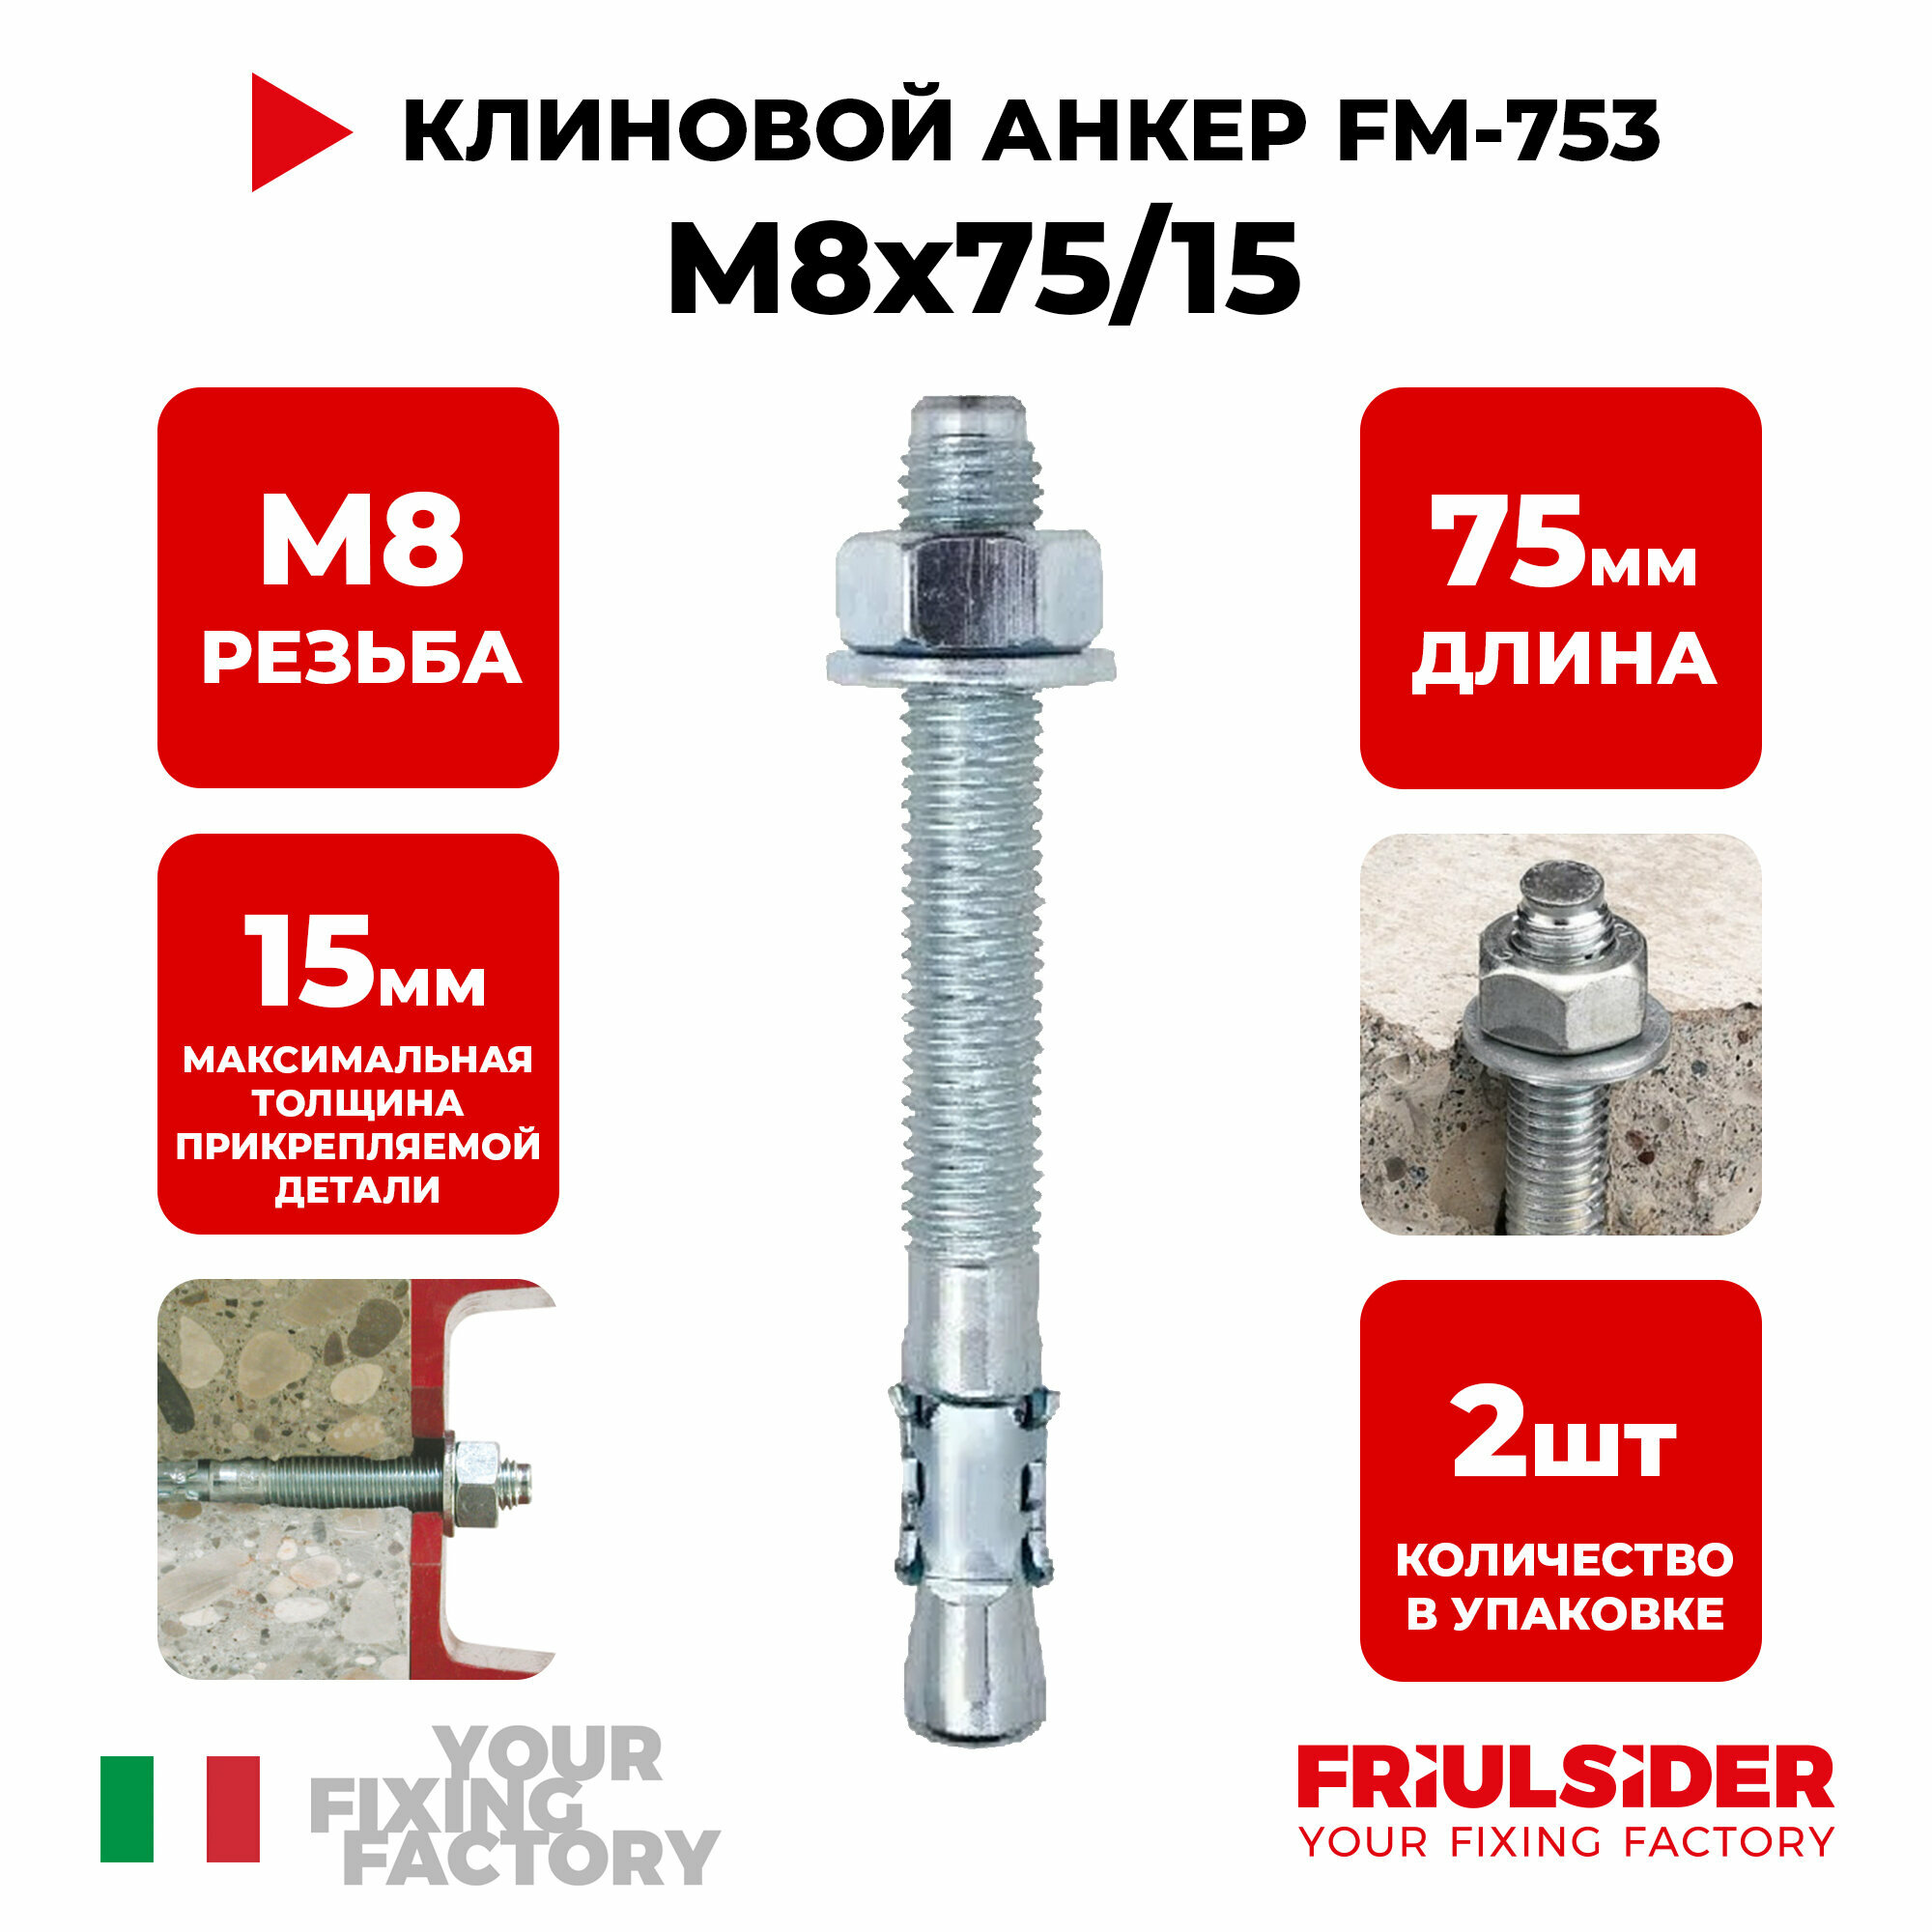 Анкер клиновой FM753 M8x75/15 (2 шт)